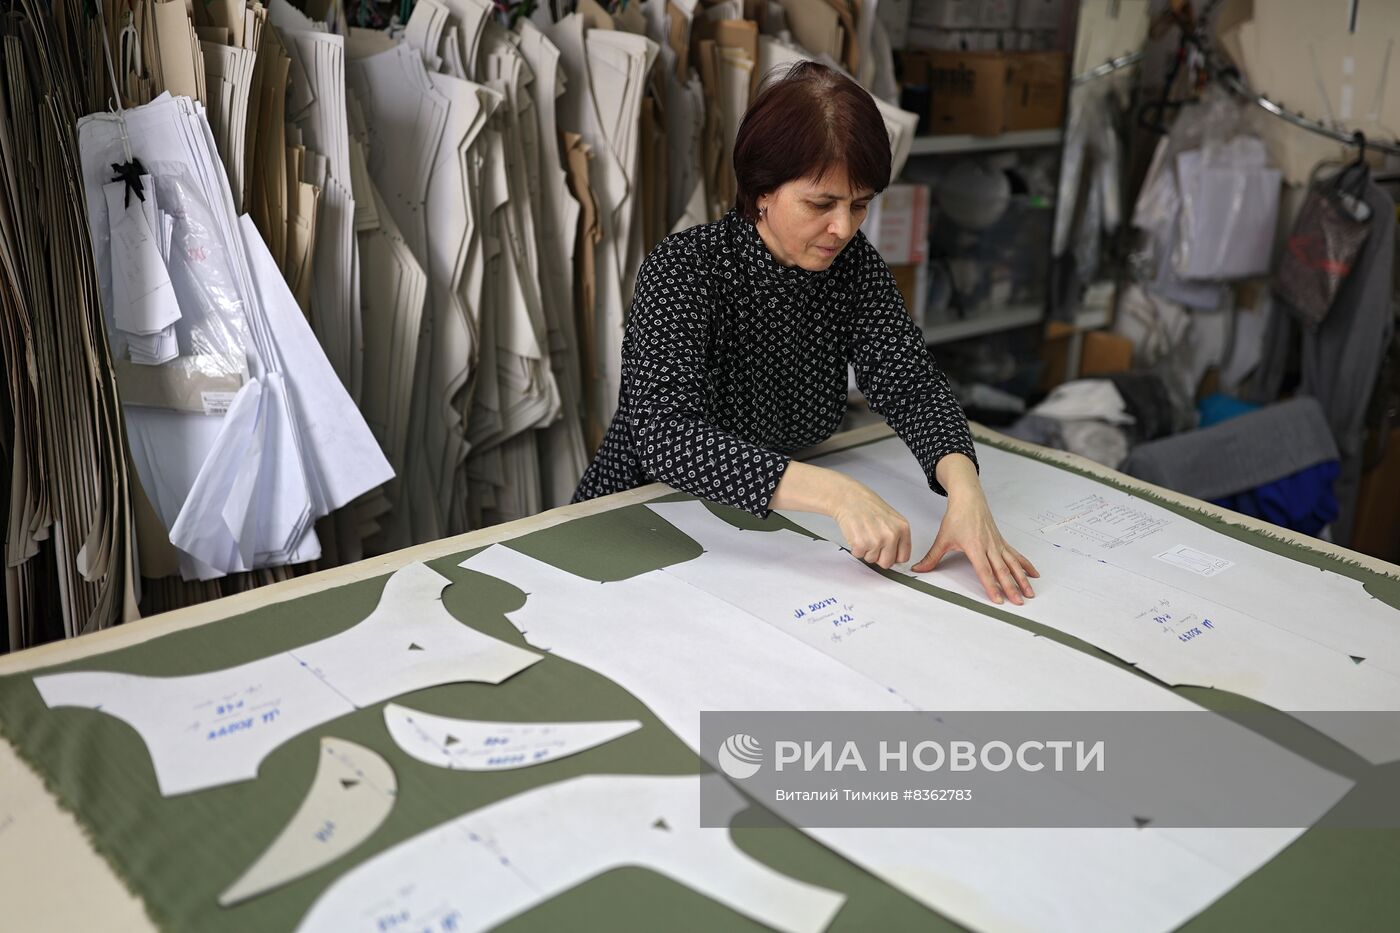 Производство одежды в Краснодаре